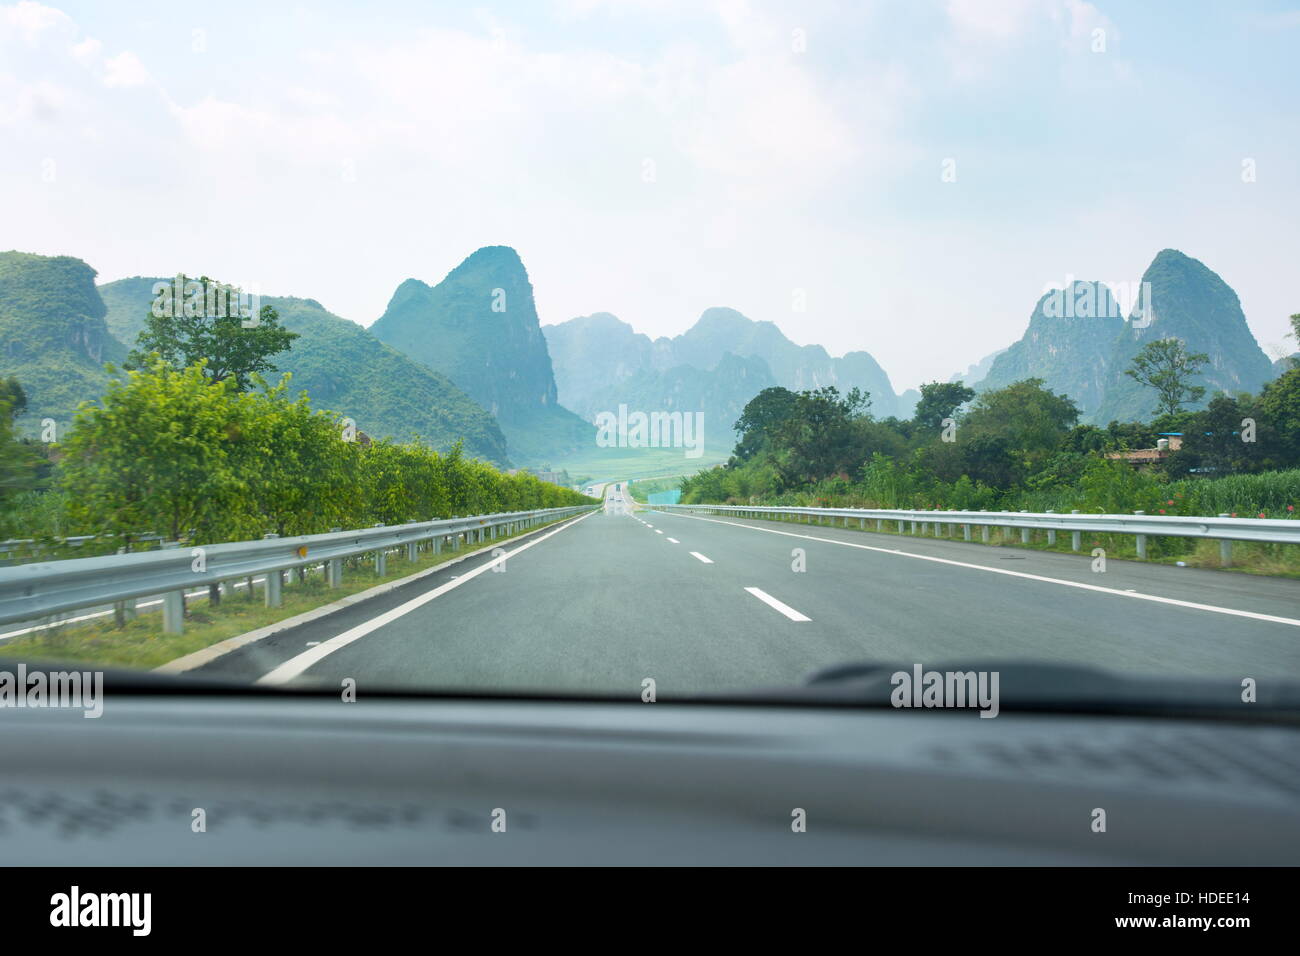 La conducción a través de los arrozales y el paisaje cárstico en la provincia de Guangxi, China Foto de stock